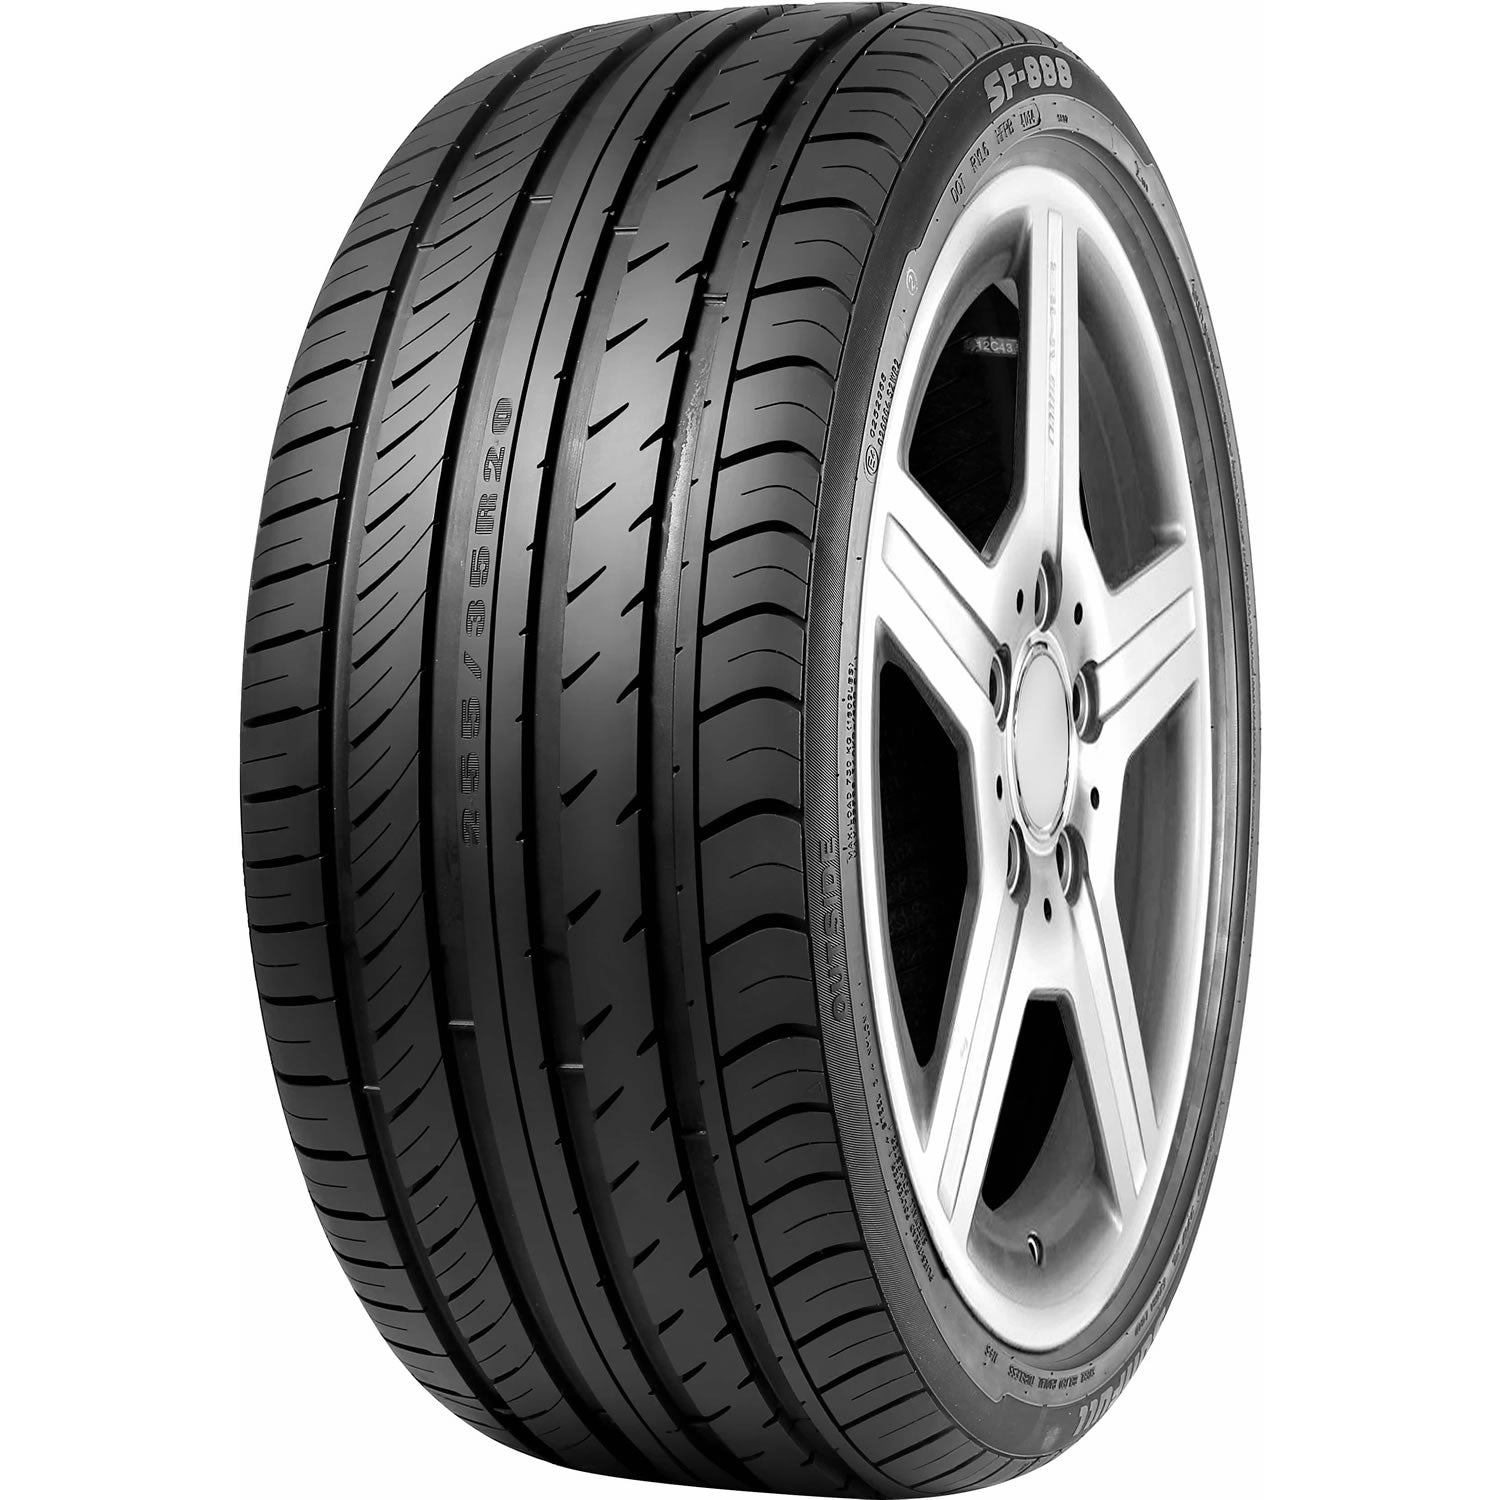 SUNFULL SF-888 255/40R19 XL (27.1X10.2R 19) Tires